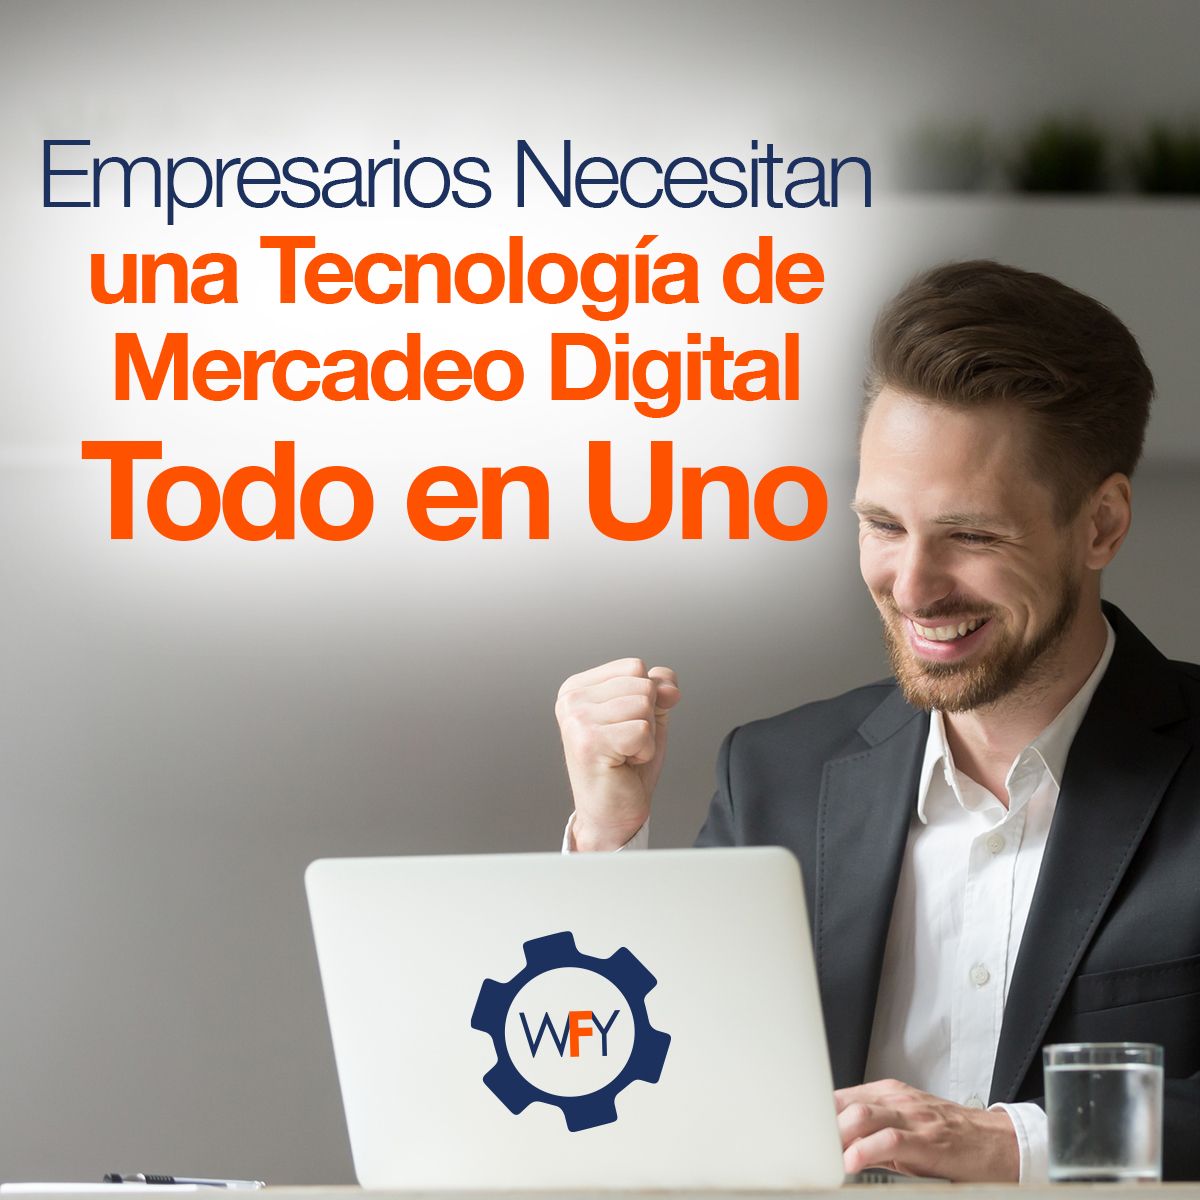 Empresarios Colombianos Necesitan una Tecnología de Mercadeo Digital Todo en Uno